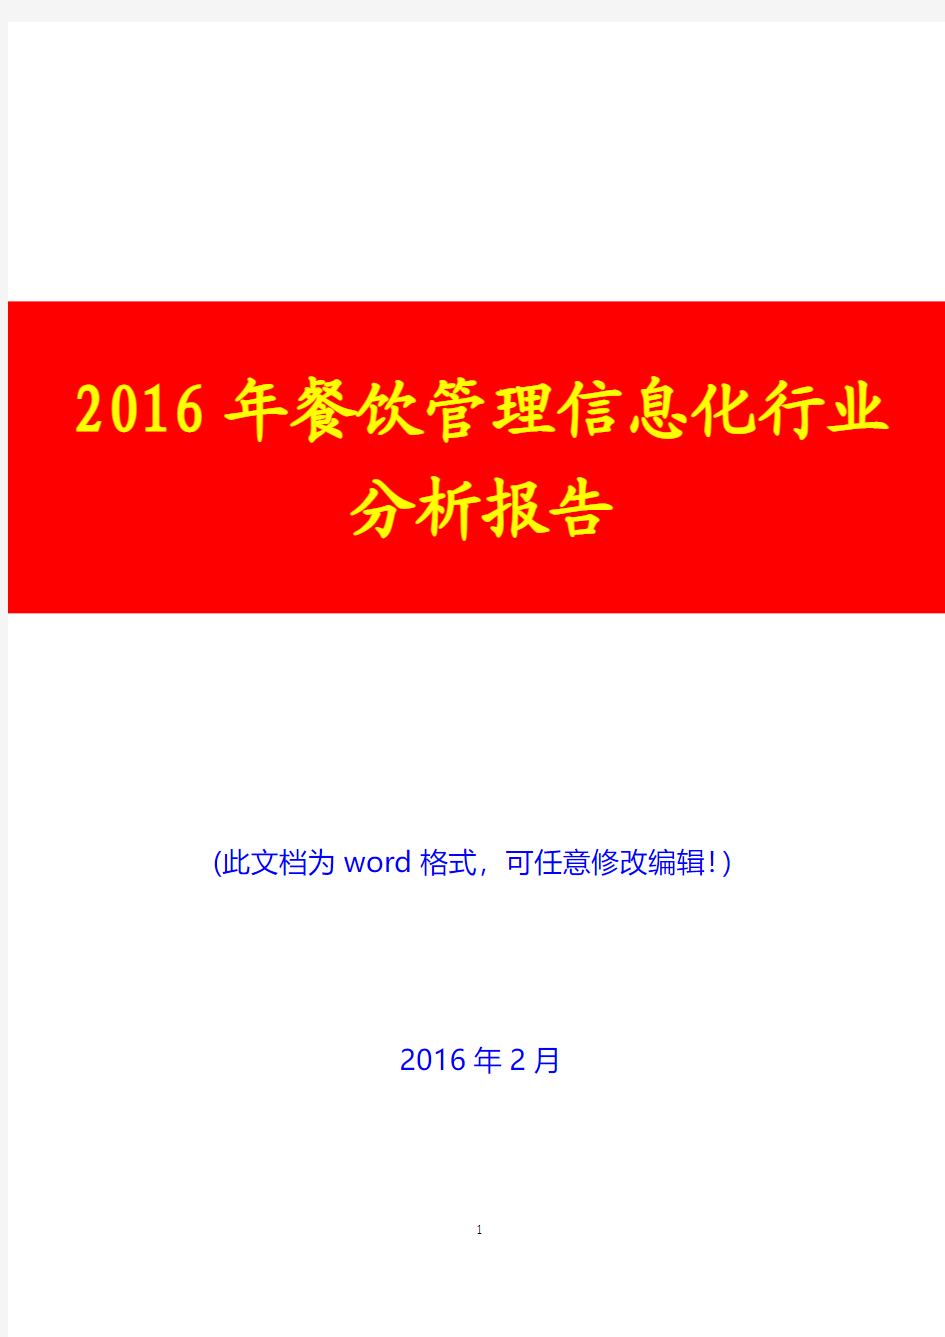 2016年中国餐饮管理信息化行业分析报告(经典版)